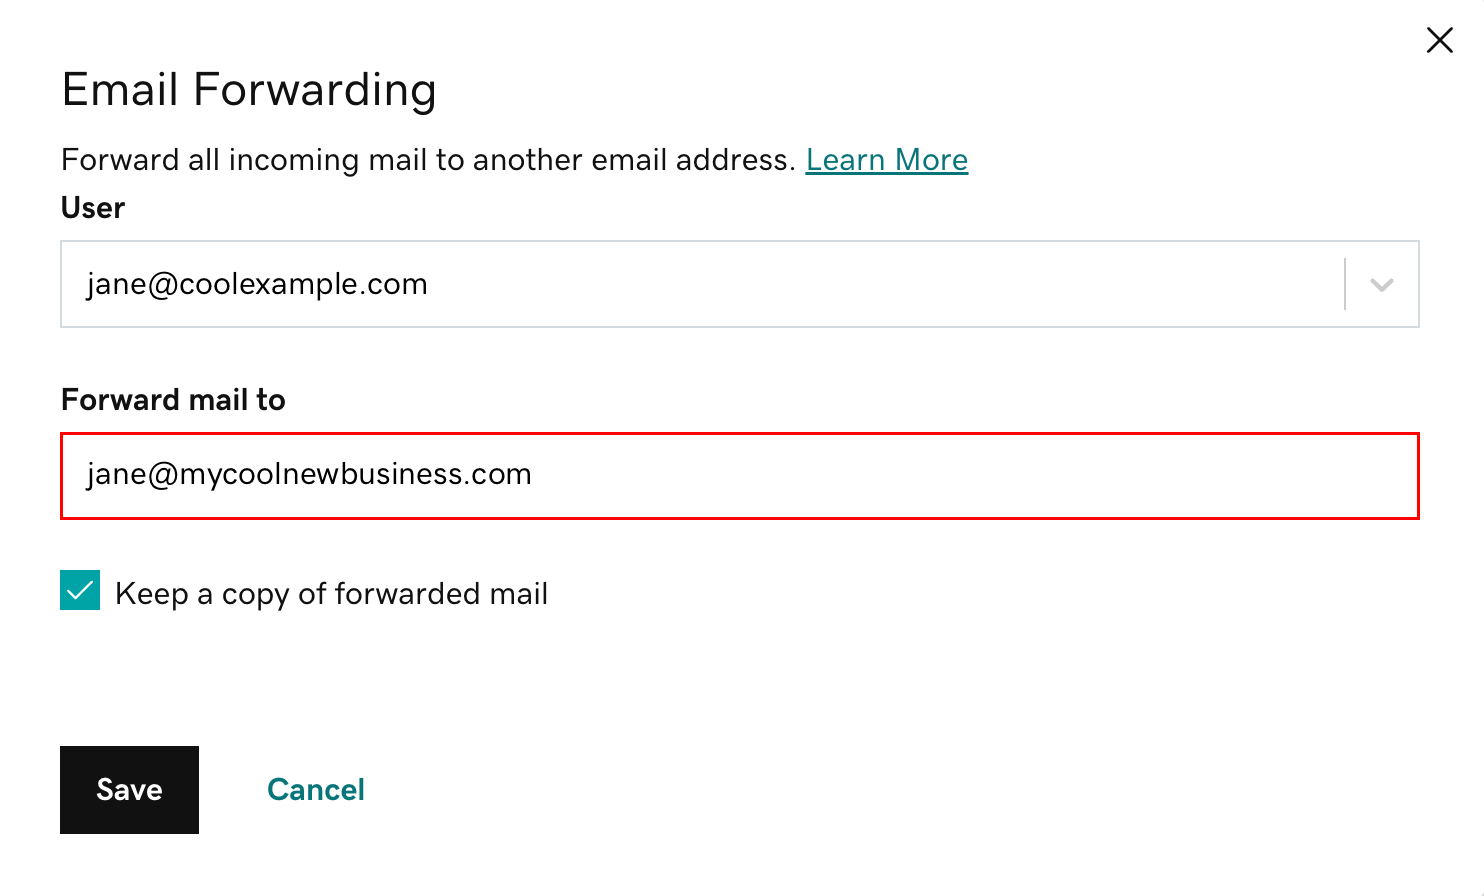 ange e-postadress för vidarebefordran